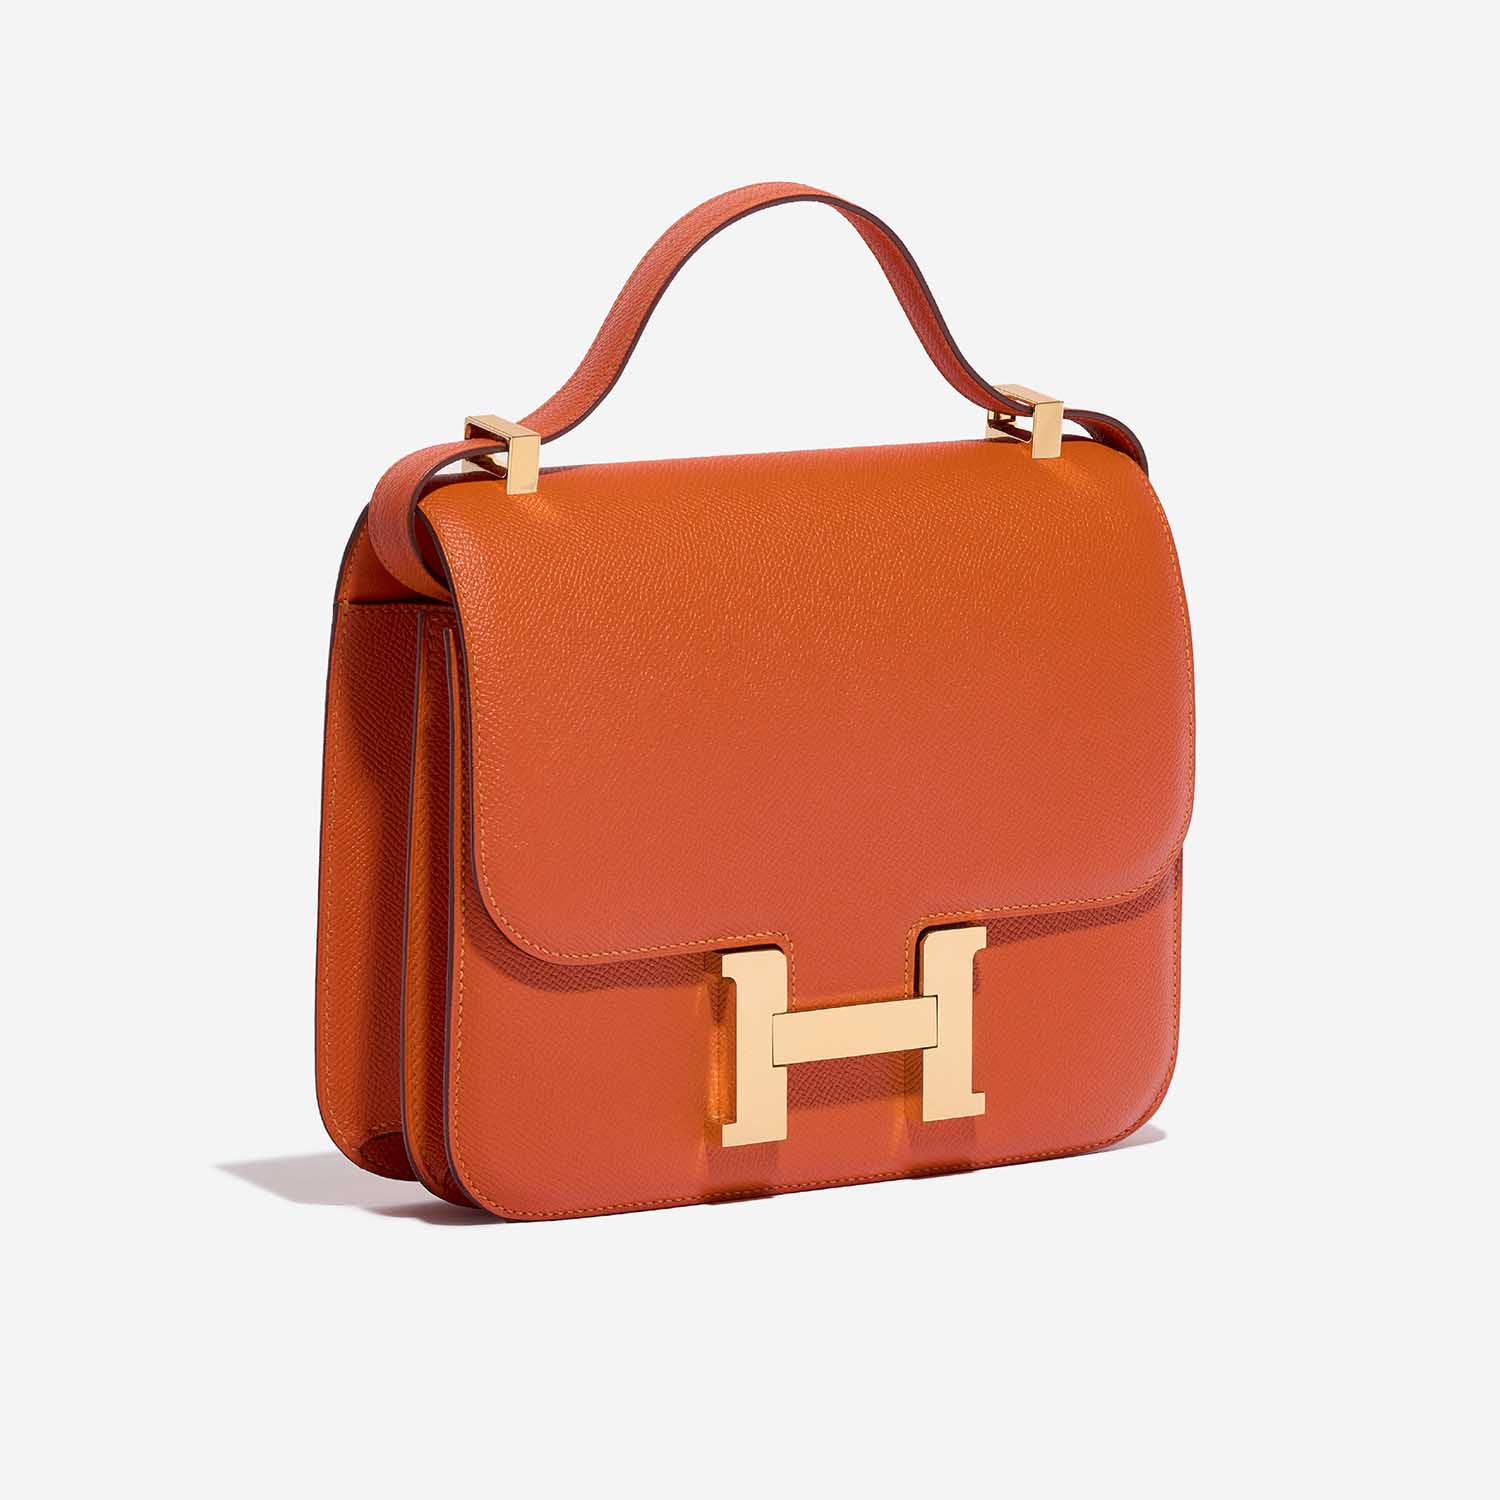 Hermès Constance 24 Feu Side Front | Verkaufen Sie Ihre Designer-Tasche auf Saclab.com